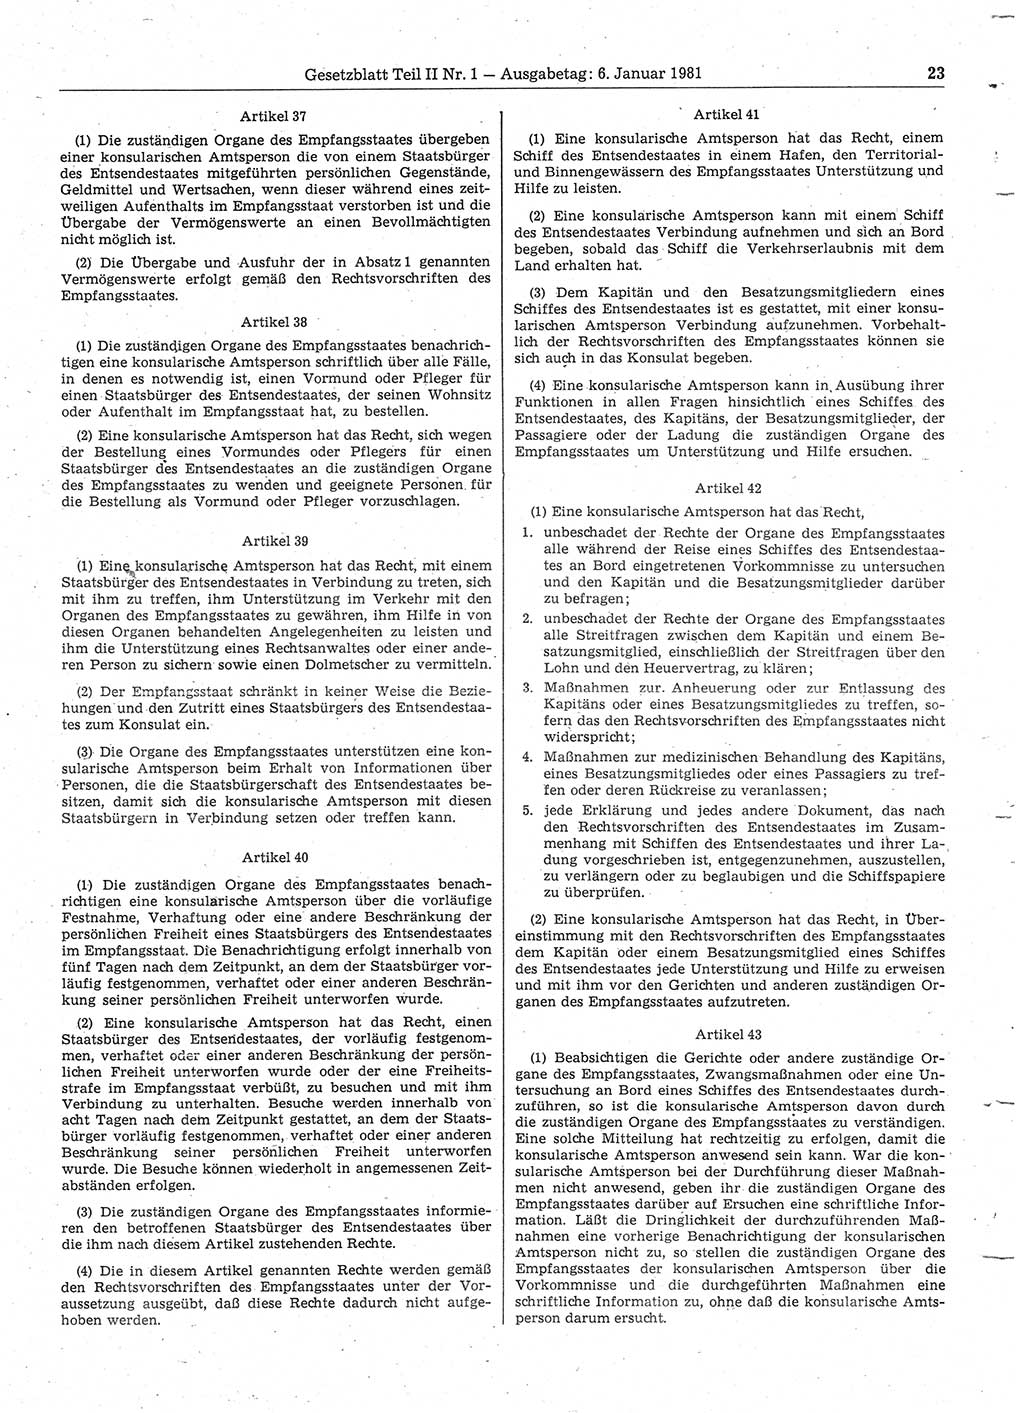 Gesetzblatt (GBl.) der Deutschen Demokratischen Republik (DDR) Teil ⅠⅠ 1981, Seite 23 (GBl. DDR ⅠⅠ 1981, S. 23)